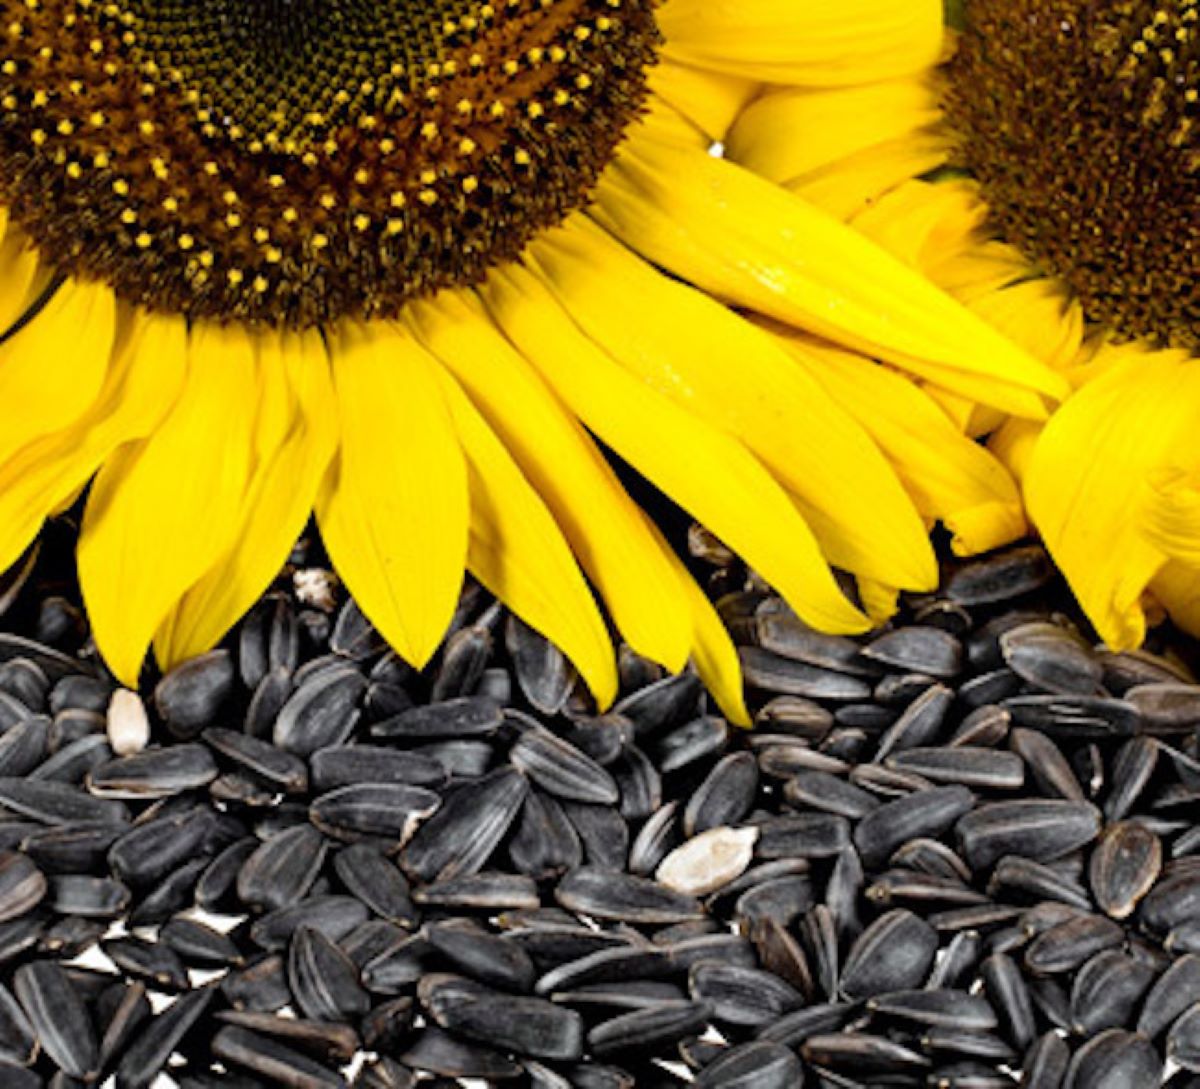 Fabricile de ulei din Bulgaria caută semințe de floarea soarelui în România. Nimeni nu vinde